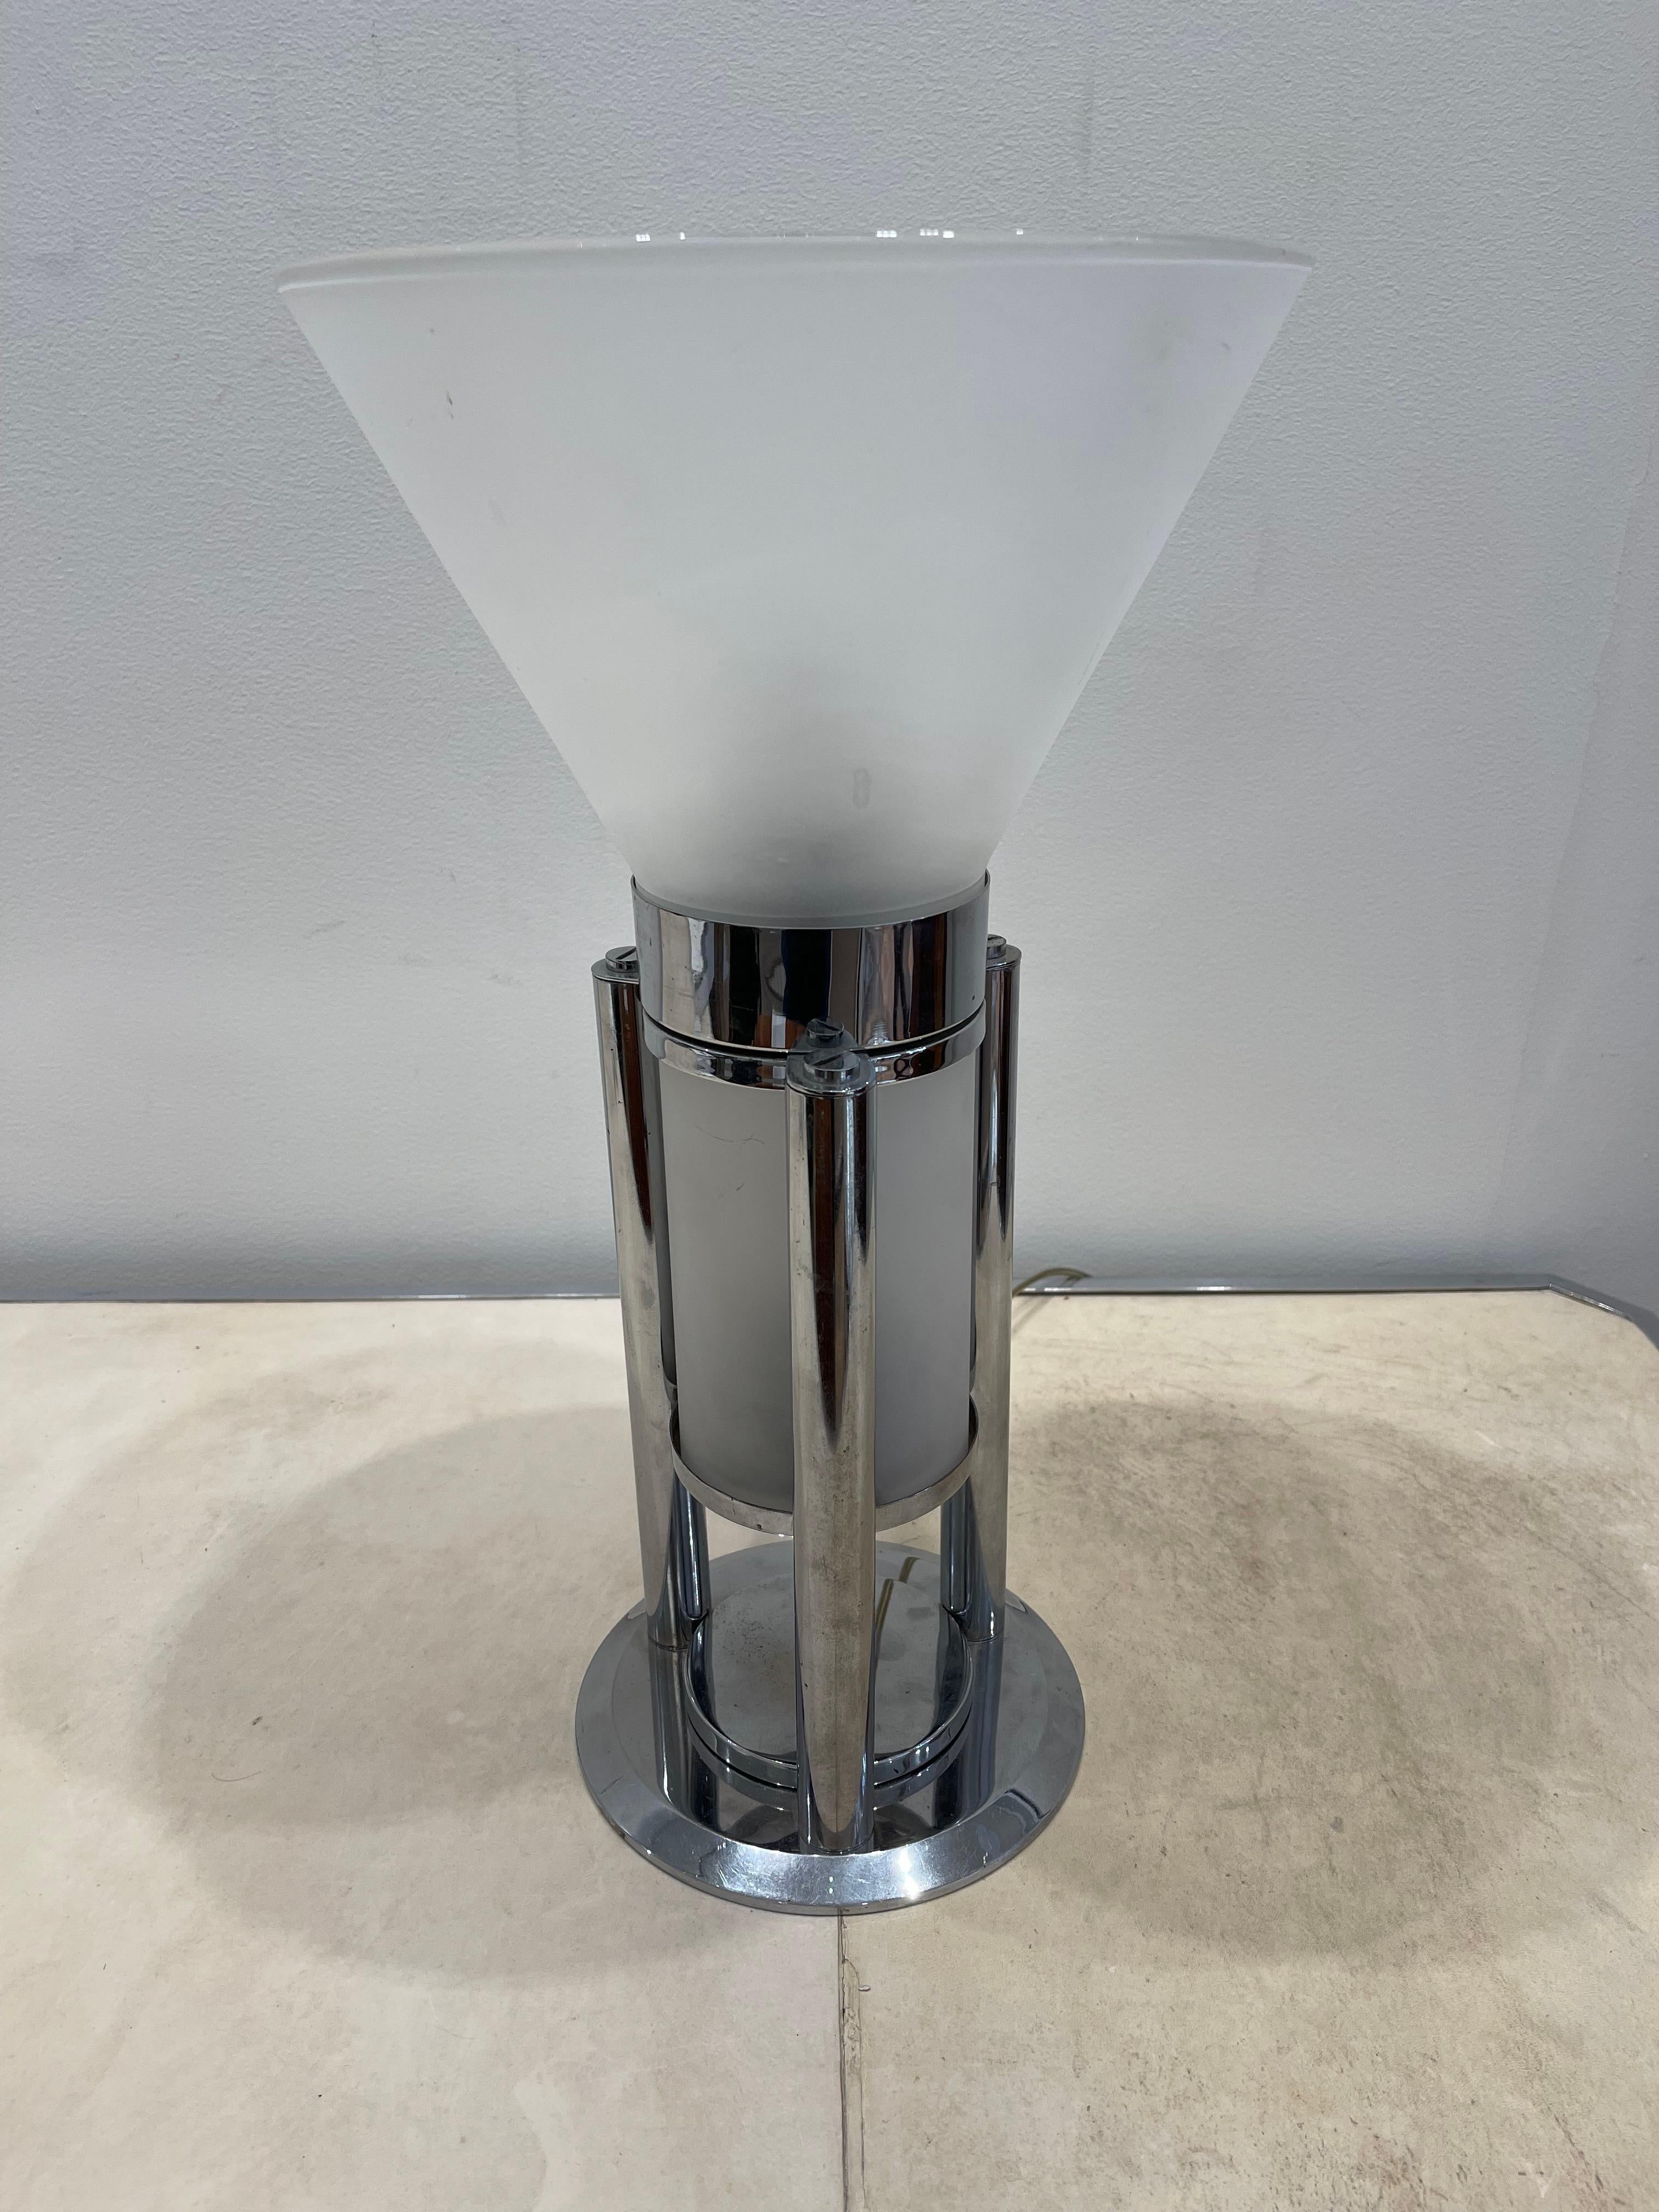 Superbe lampe de table moderniste de Jean-Boris Lacroix. Cette lampe a été produite par Mitis, l'un des principaux studios de design français de la période Art déco. Il est fait de métal chromé et de verre sablé. Elle possède 2 ampoules : une dans